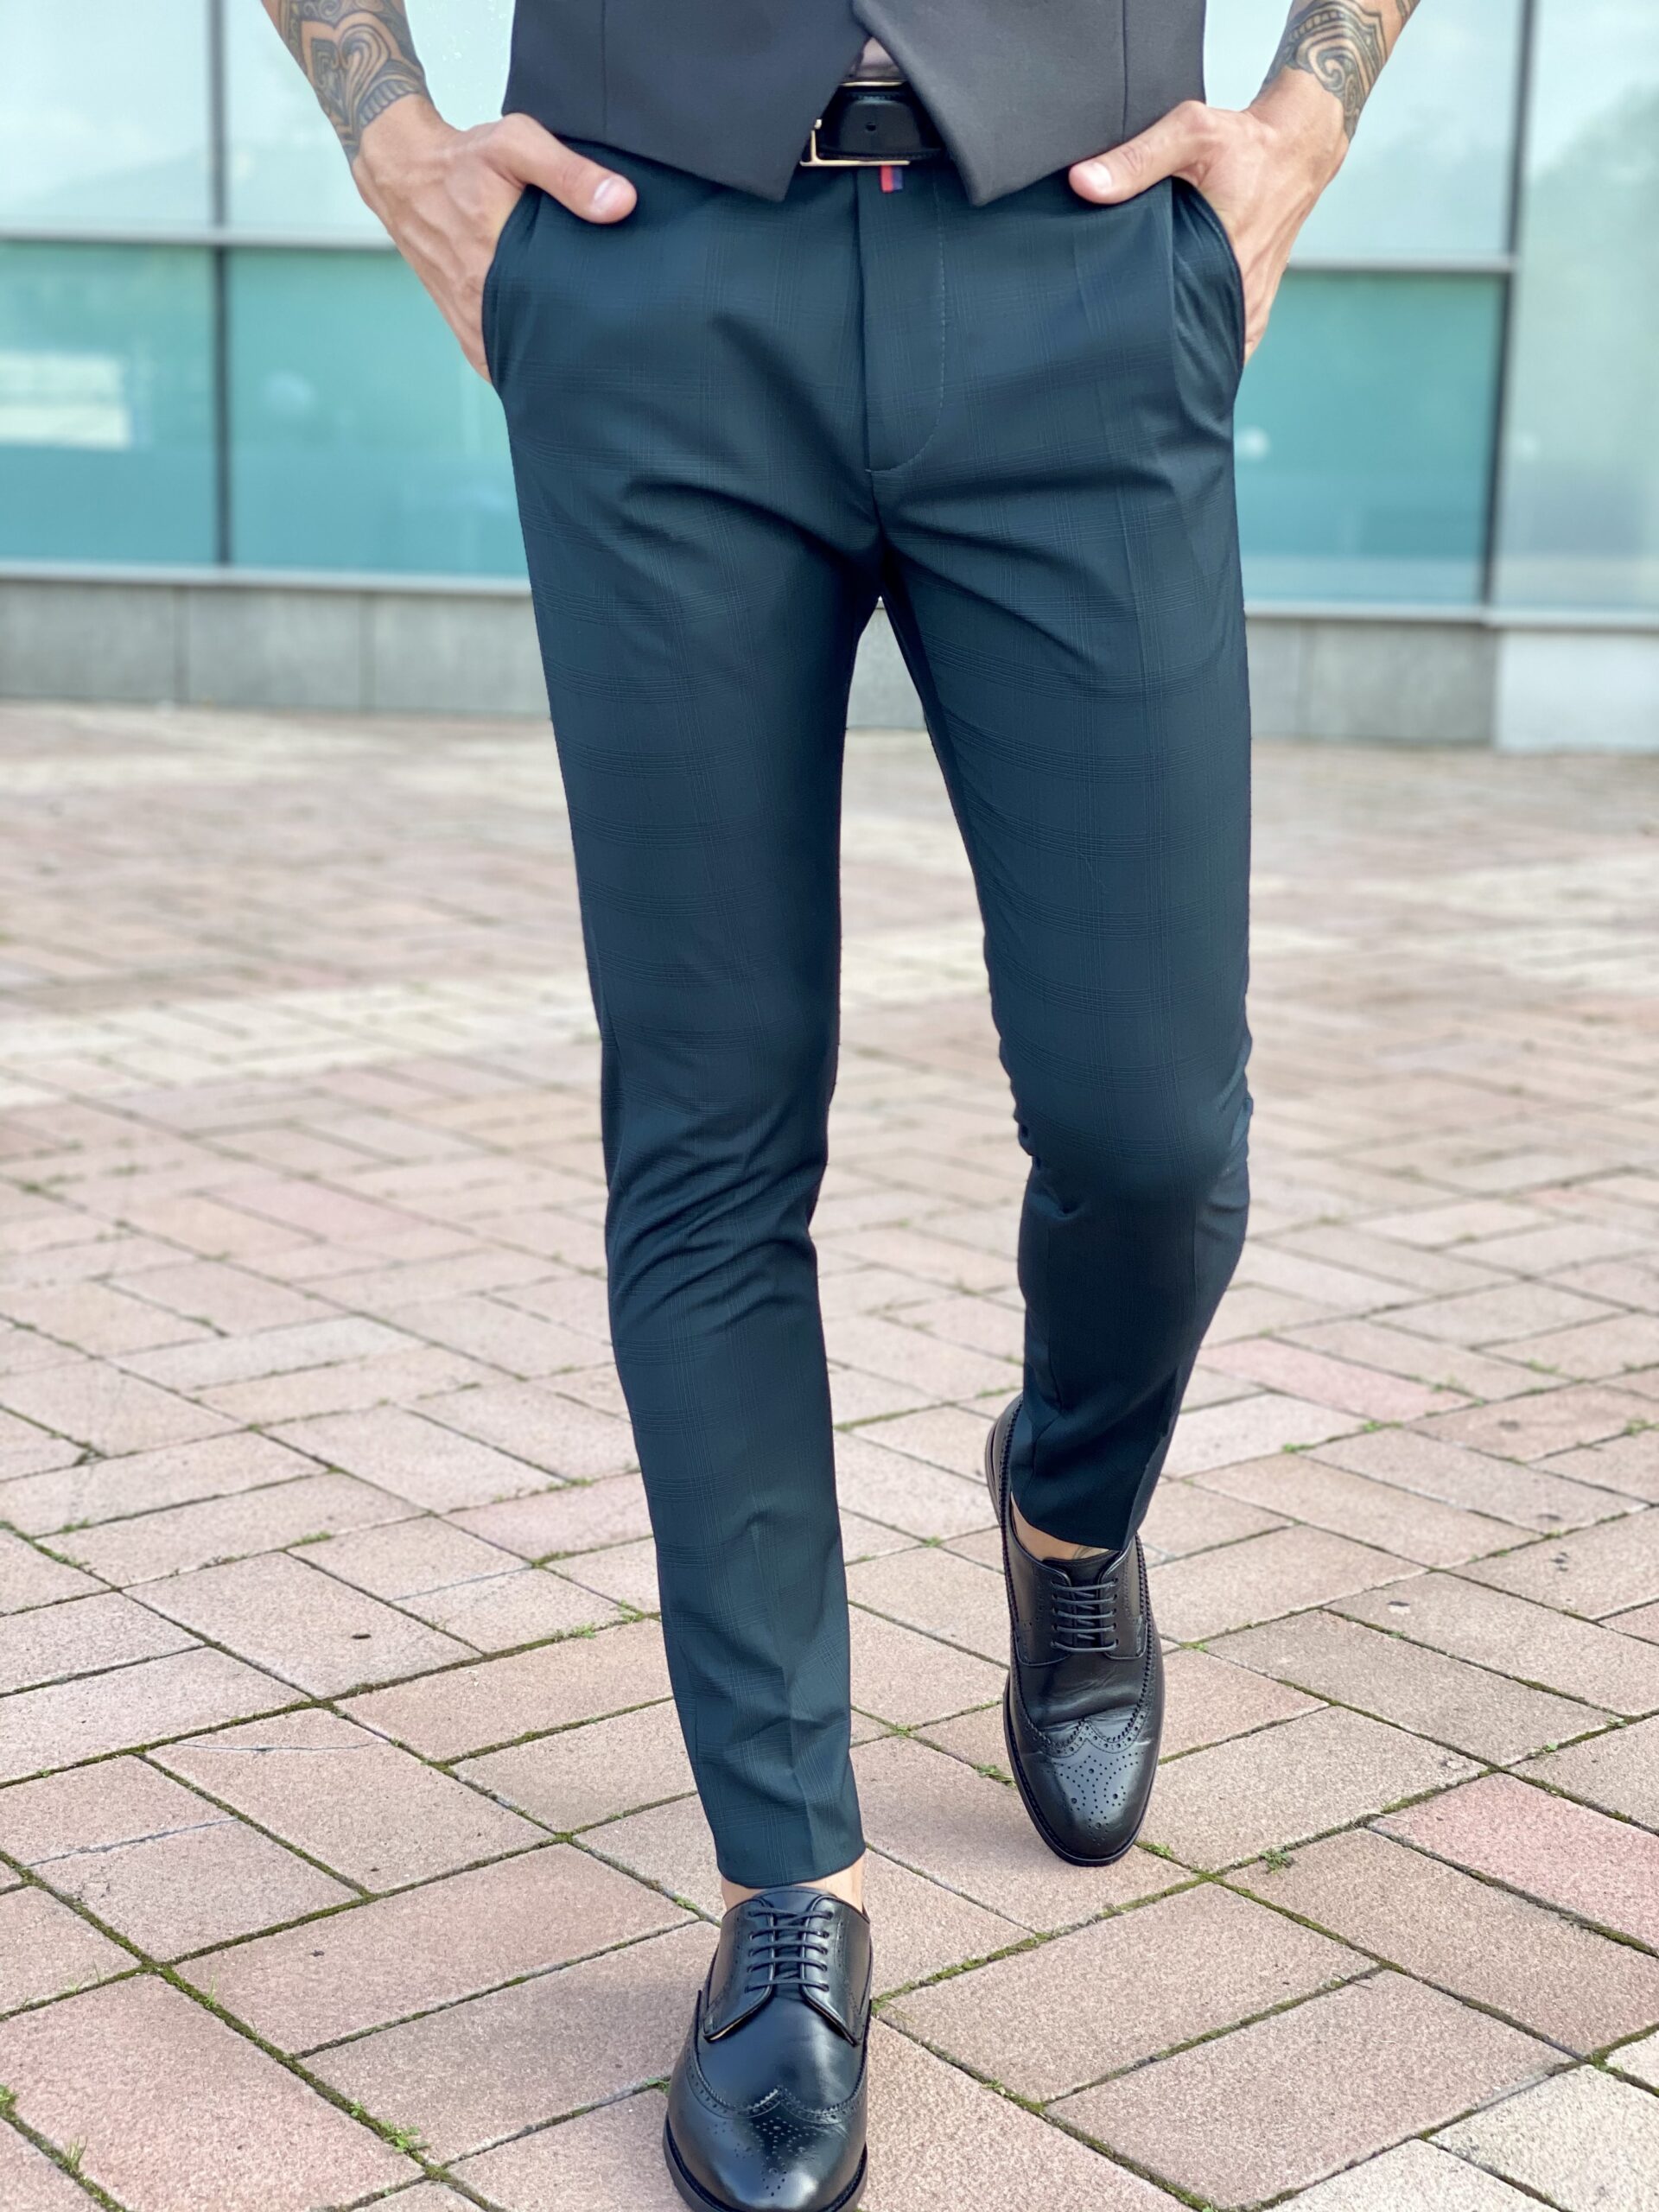 Мужские синие зауженные брюки, укороченной длины. Арт.: 2471 – купить вмагазине мужской одежды Smartcasuals